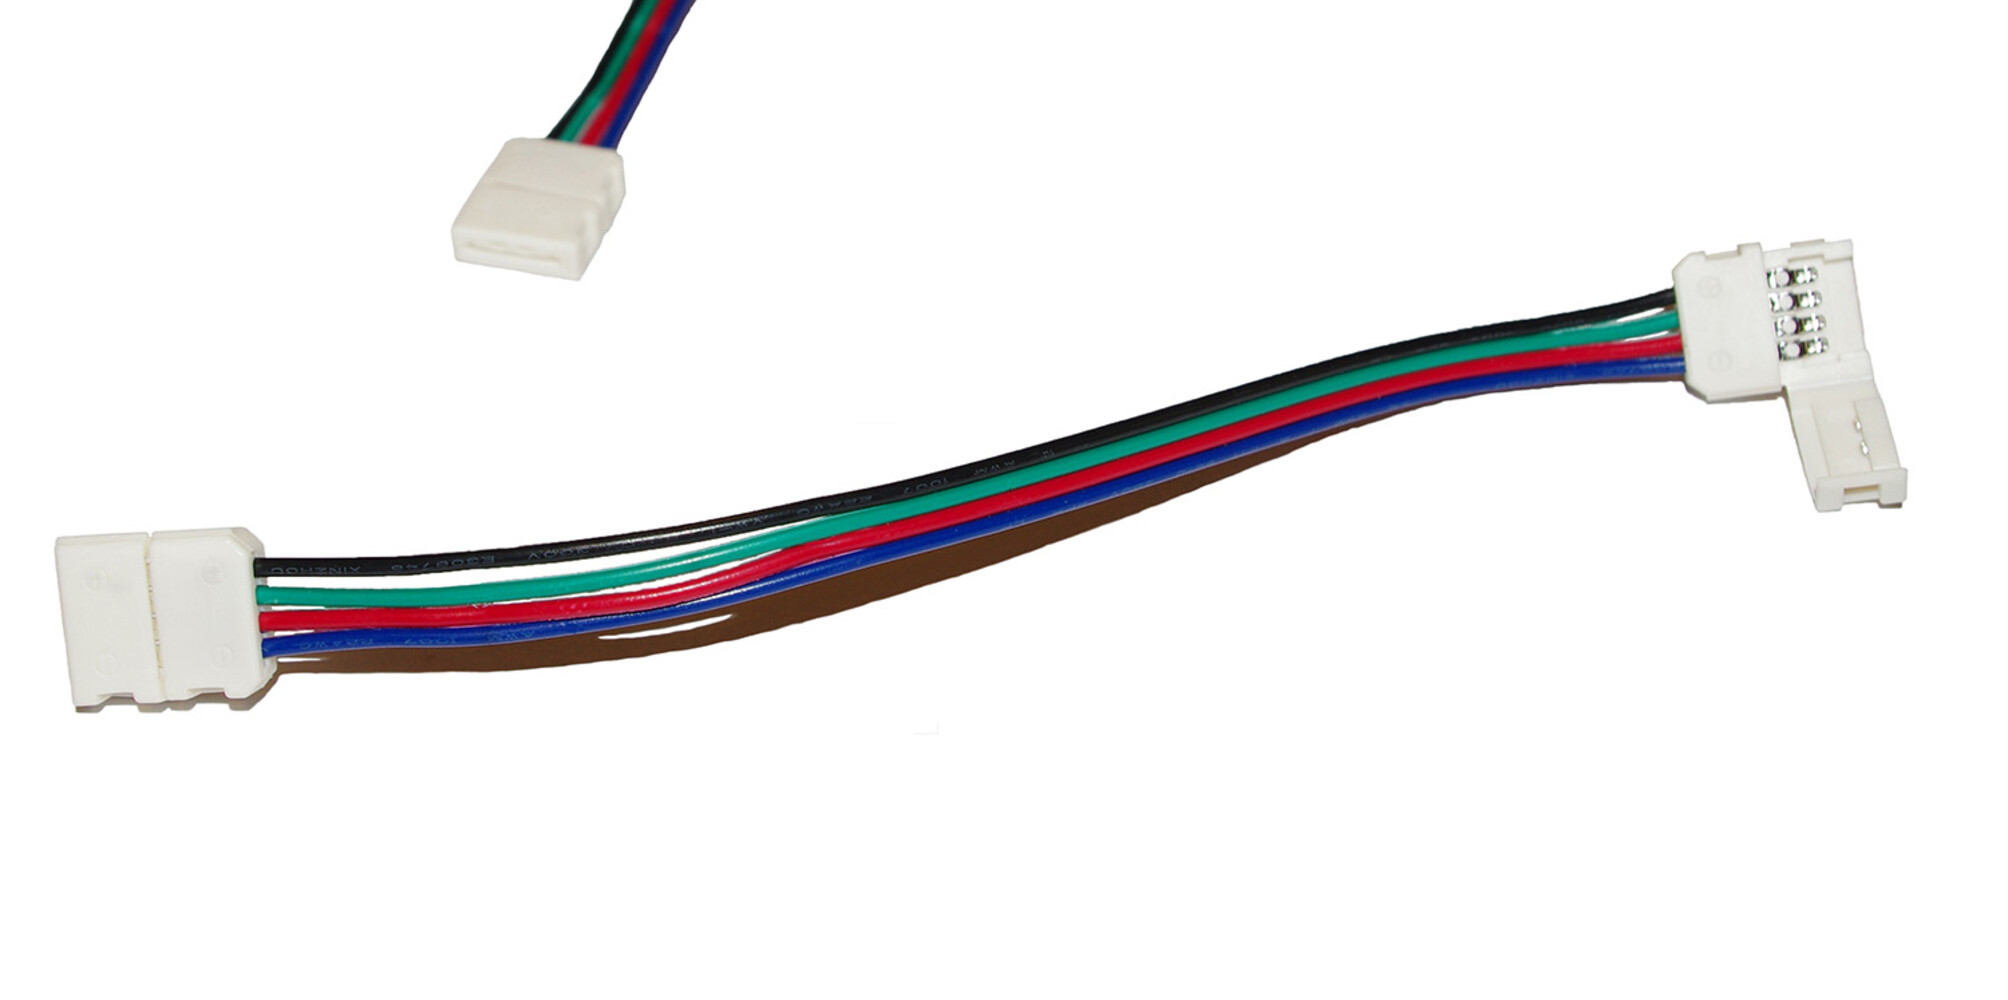 Hochwertiges LED Streifen Kabel von LED Universum mit robustem Klippbefestigung und Schnellverbinder